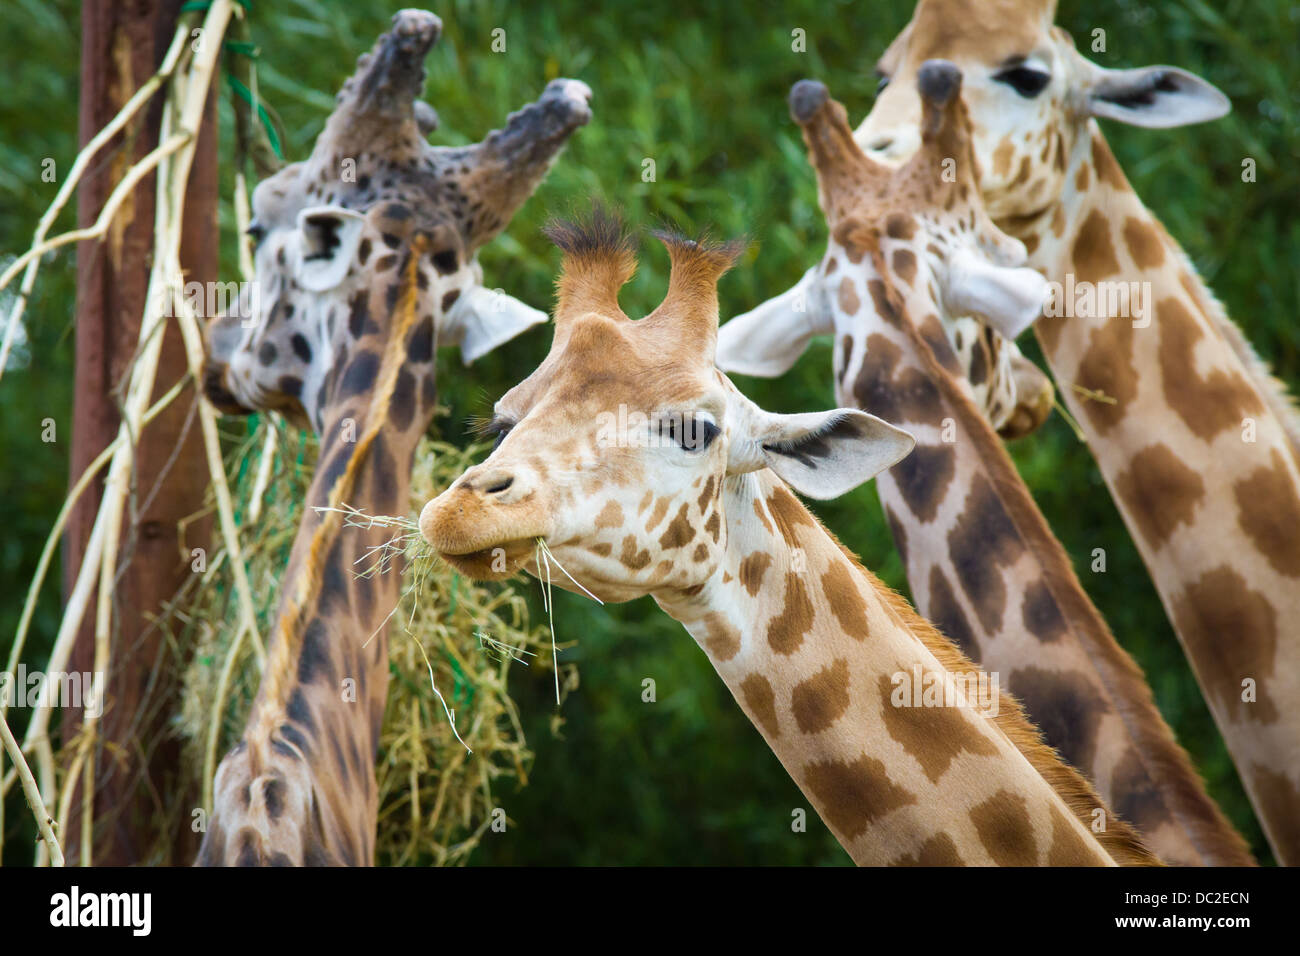 Les Girafes de manger au parc d'animaux sauvages des lacs du Sud dans la région de Dalton de Furness, Cumbria. Banque D'Images